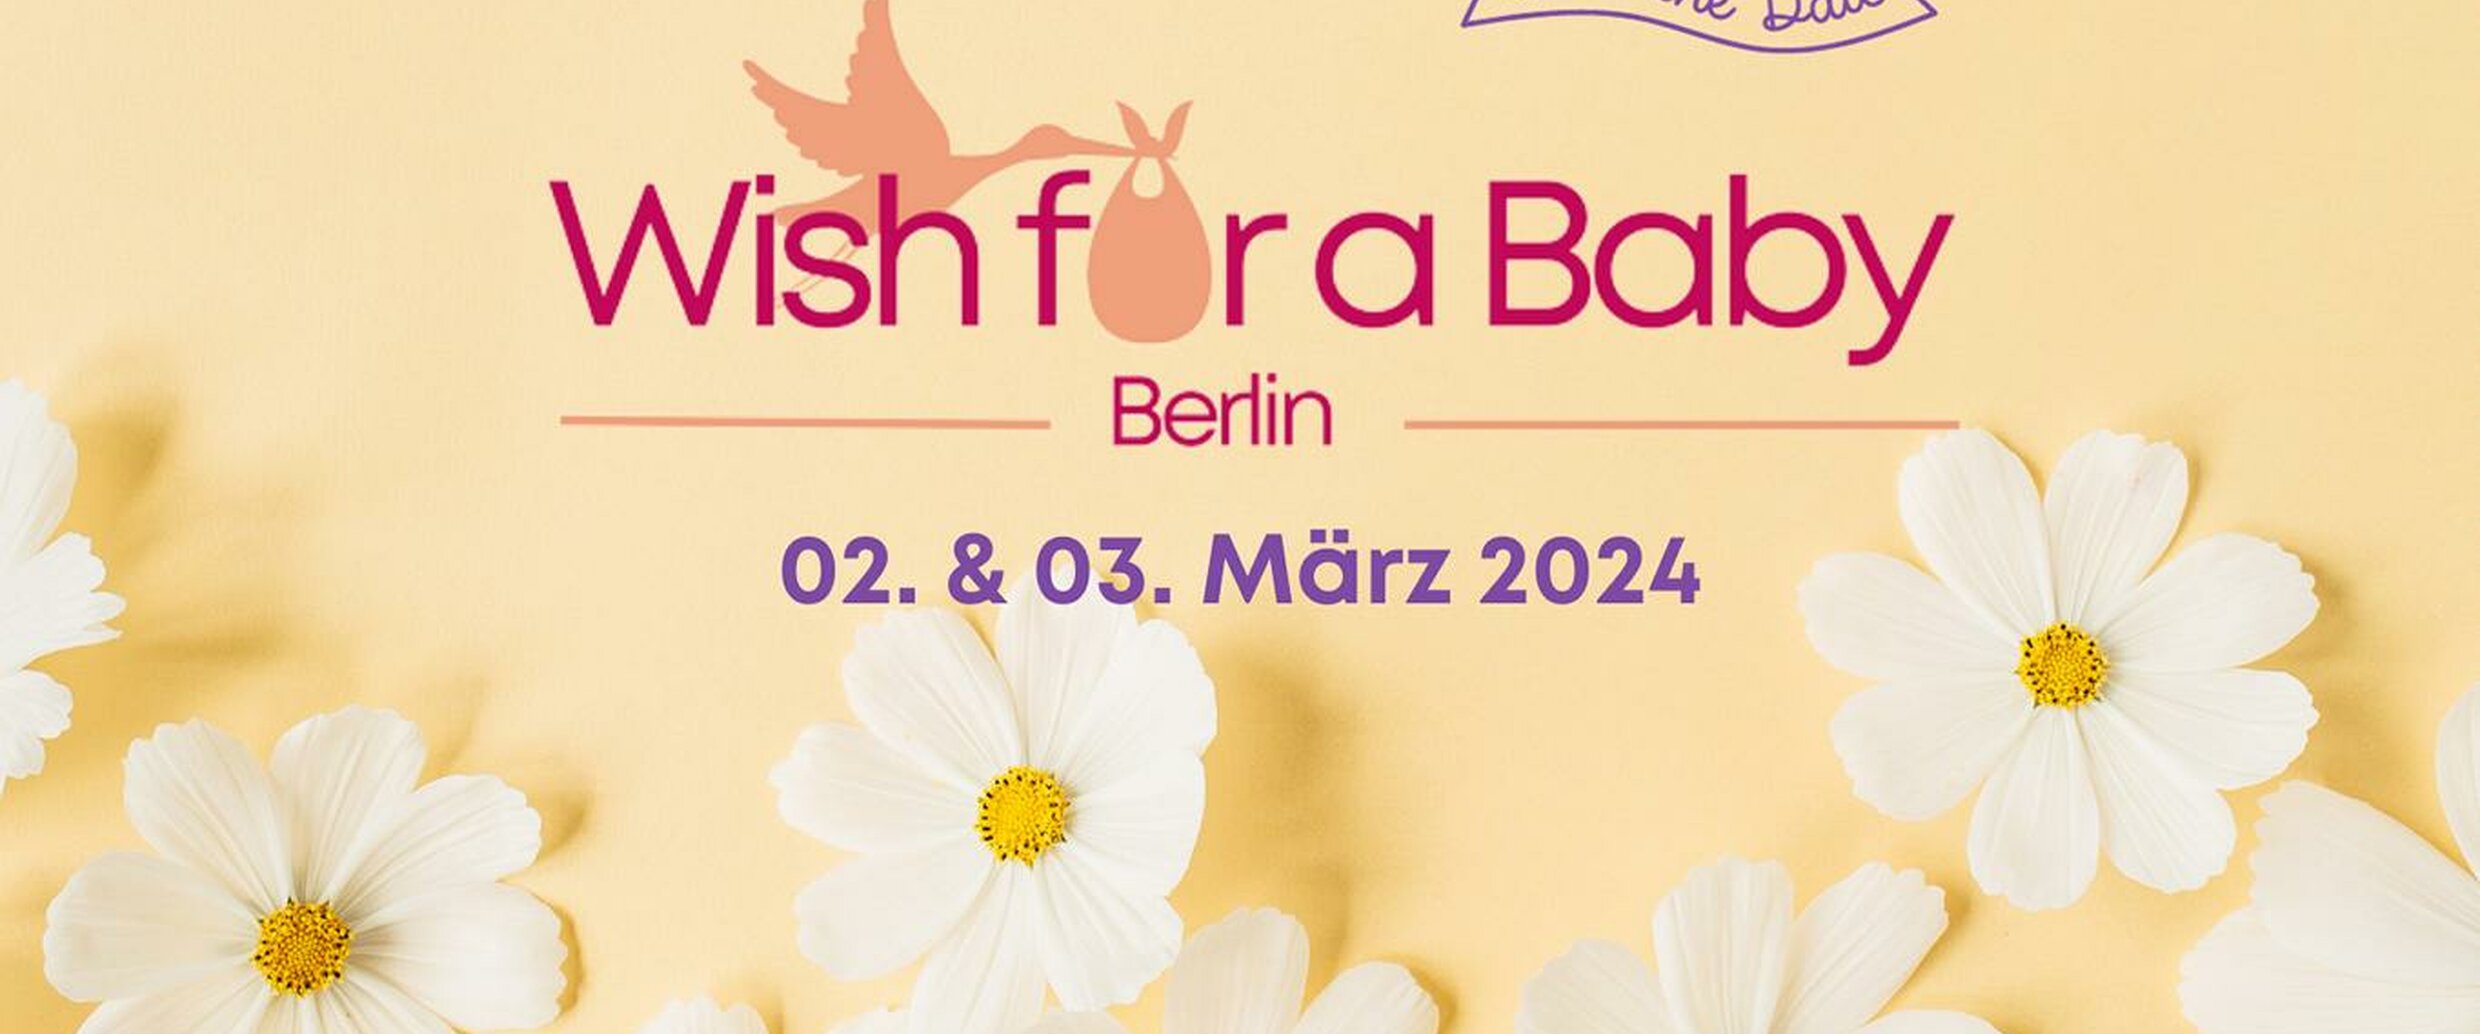 Desiderio di una Baby Berlino